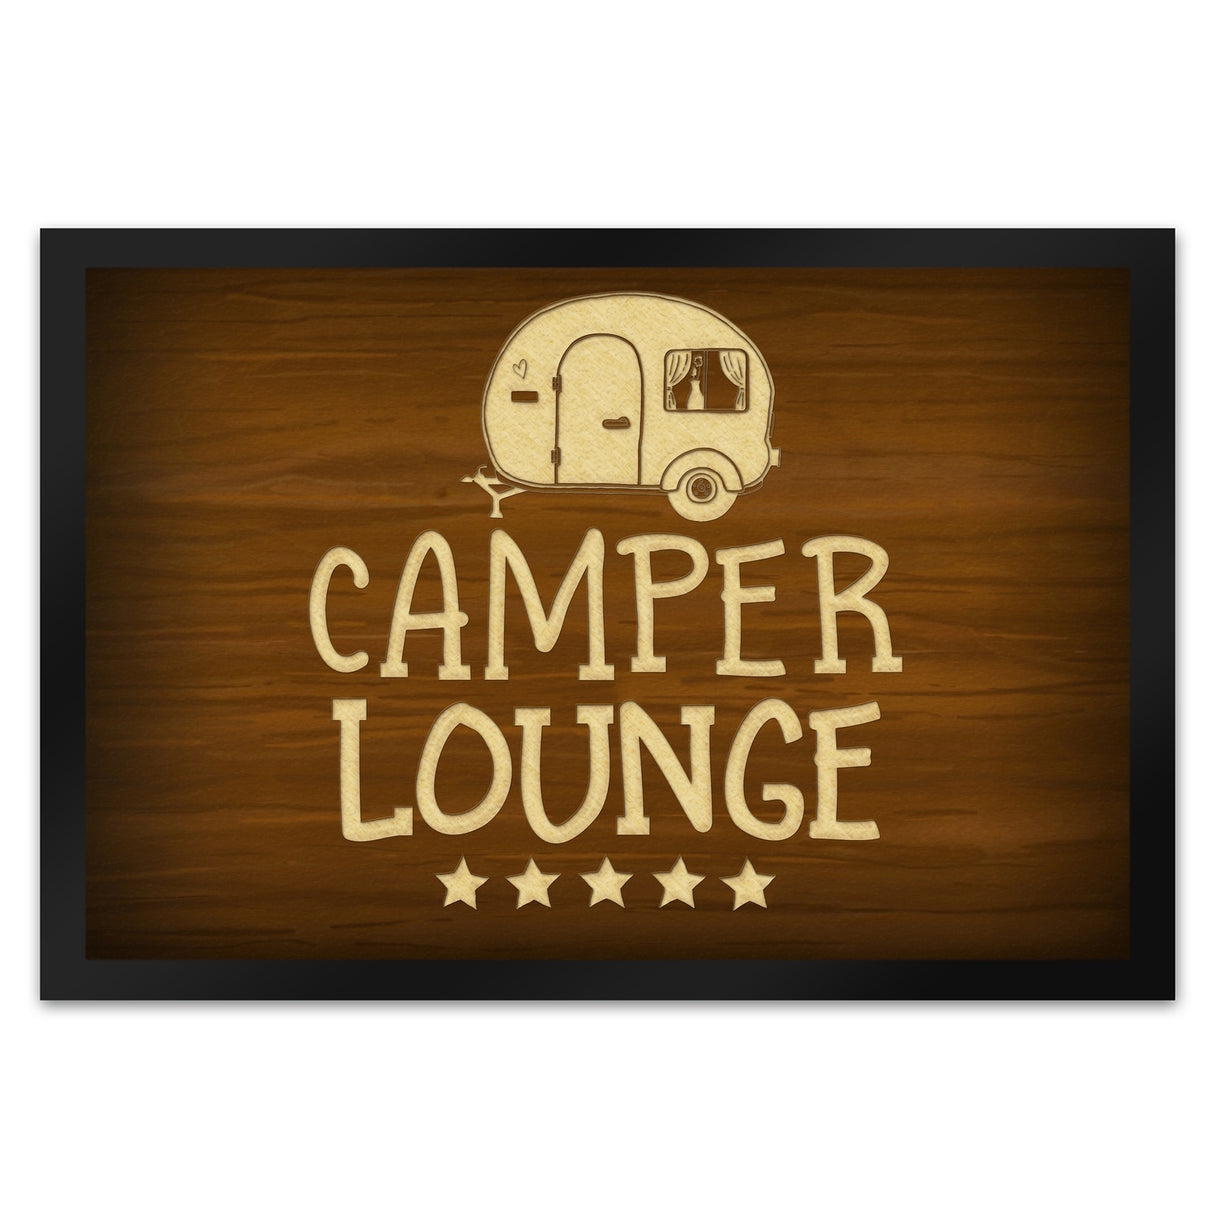 Camper-Lounge Fußmatte mit Wohnwagen Motiv VIP Wohnwagen Wohnmobil Urlaub Gast Gäste